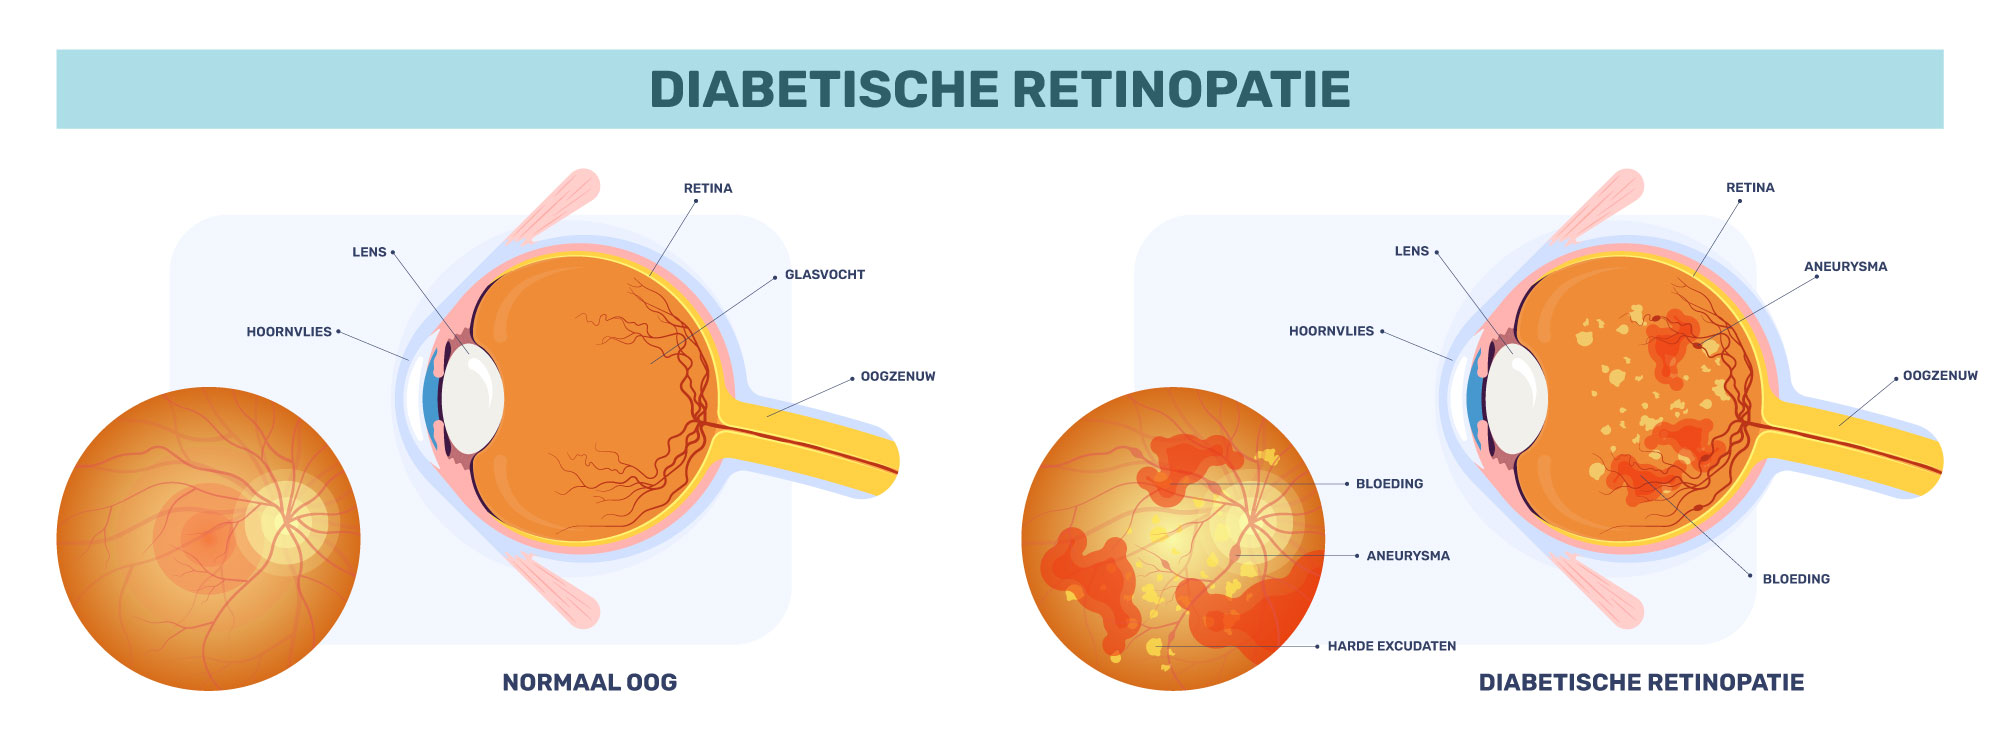 diabetische retinopatie